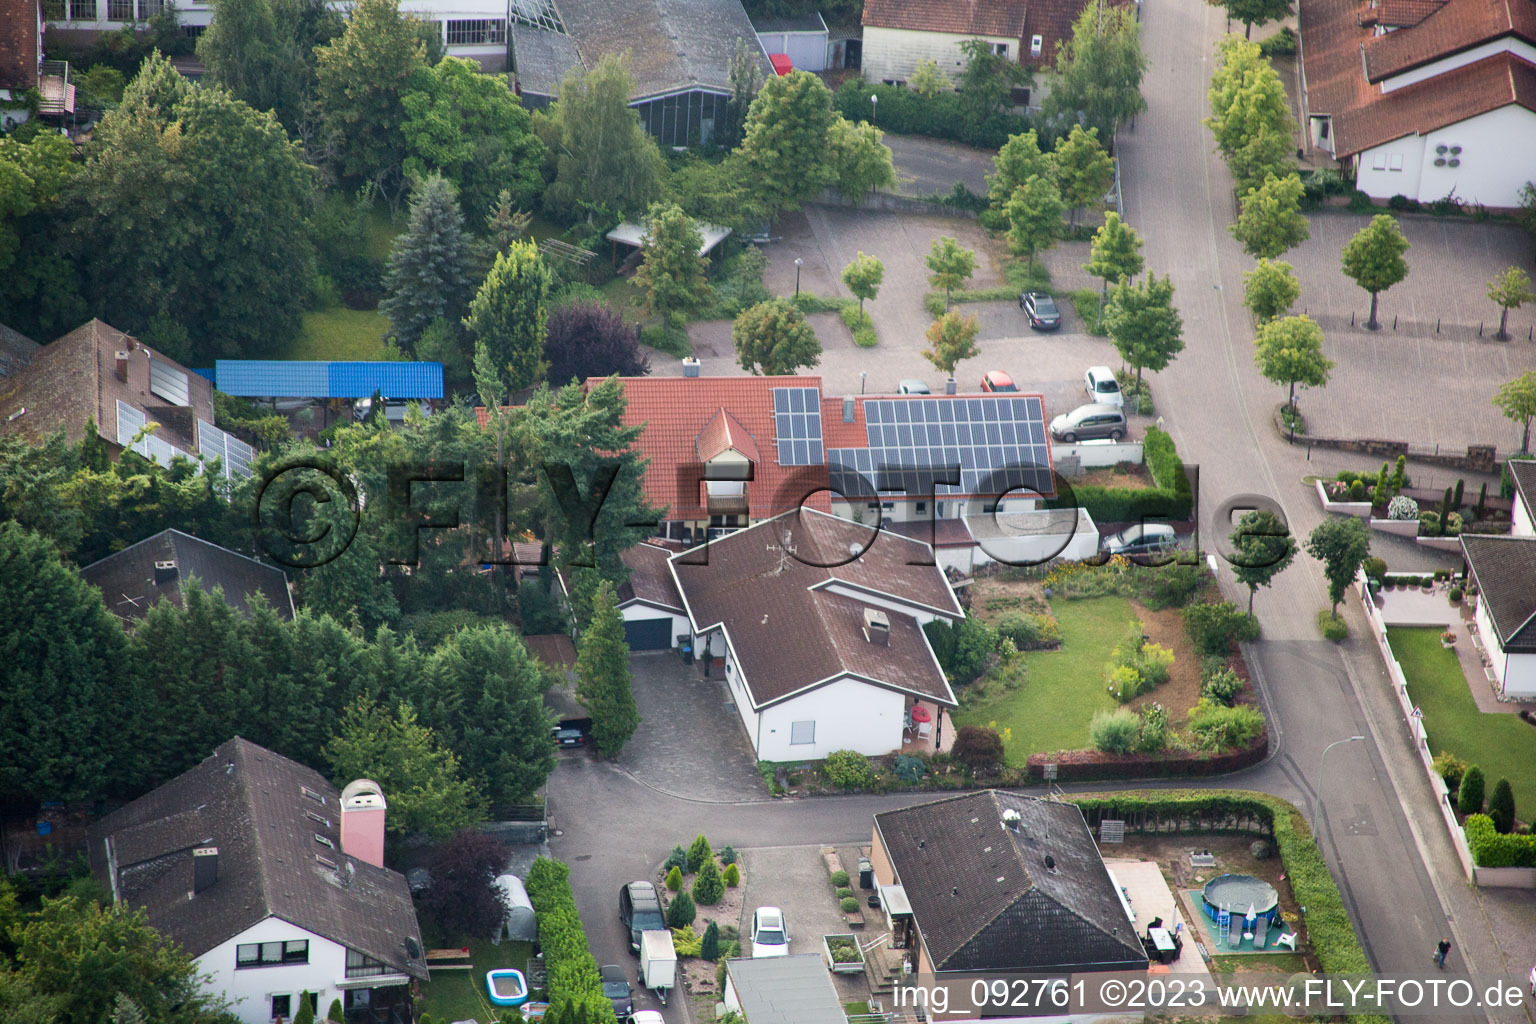 Oblique view of District Billigheim in Billigheim-Ingenheim in the state Rhineland-Palatinate, Germany